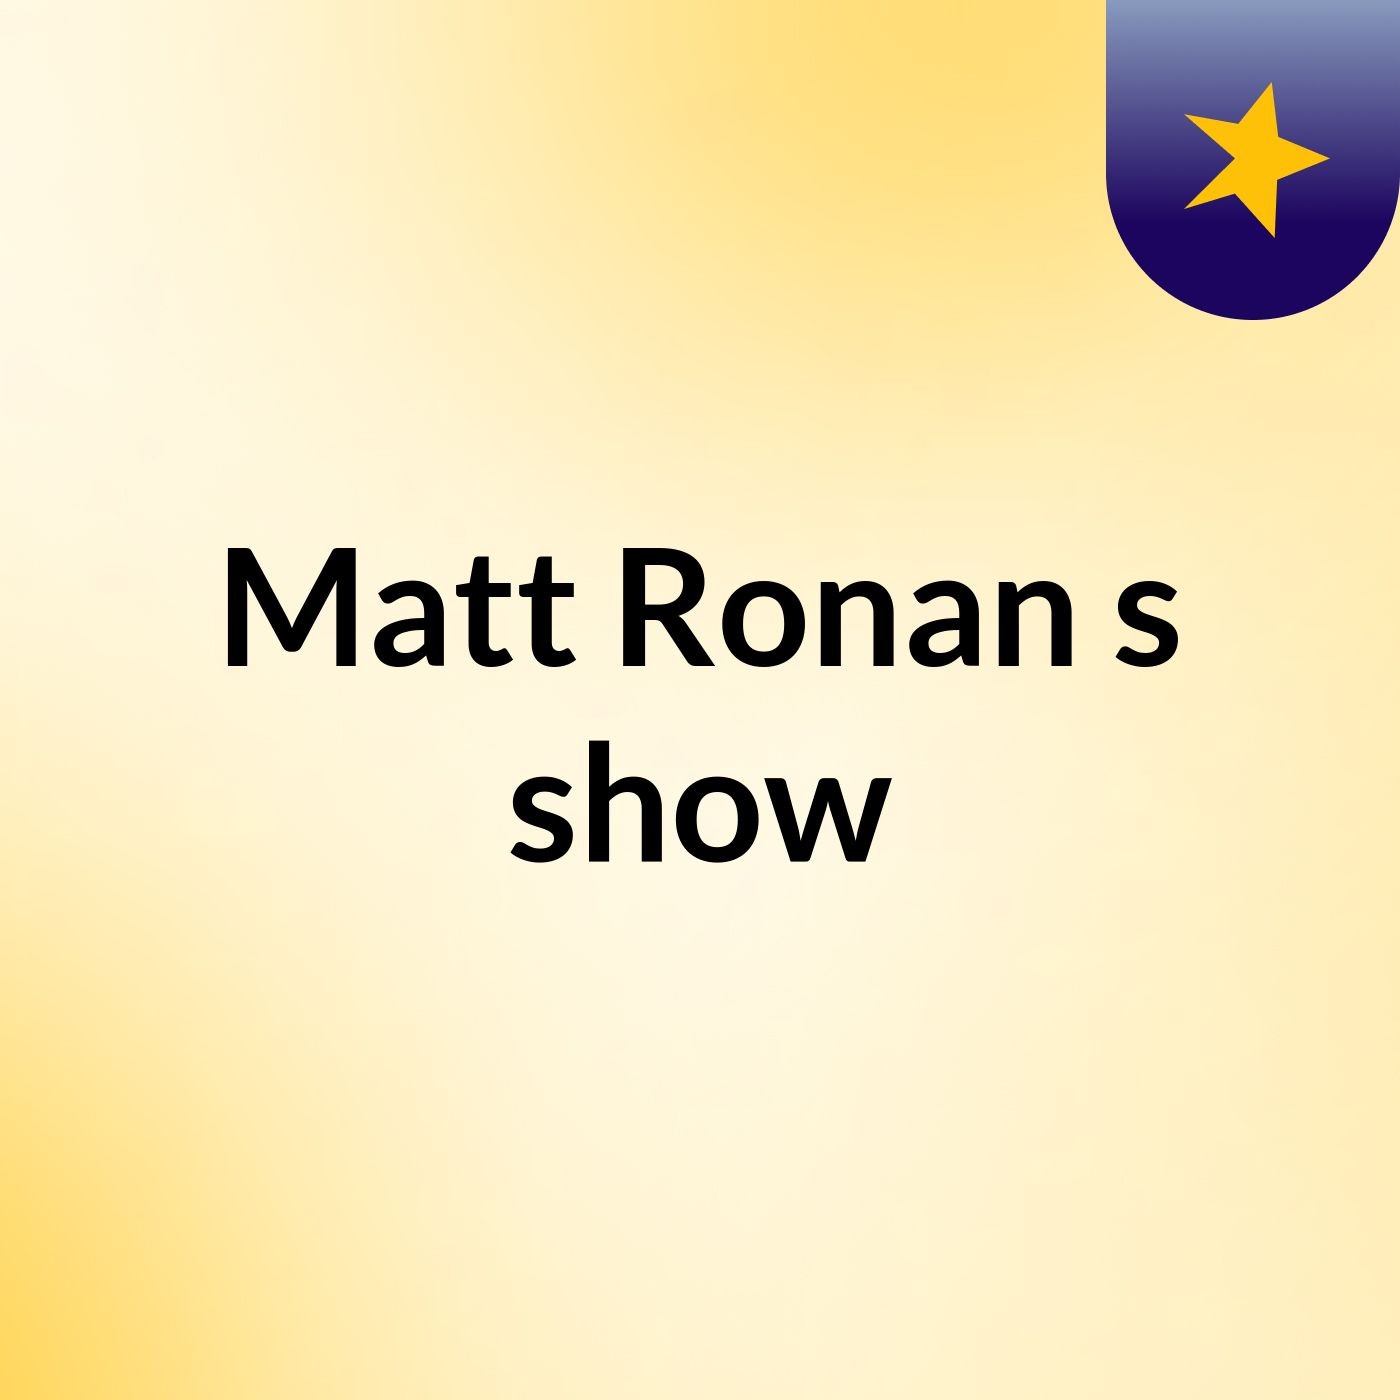 Matt Ronan's show